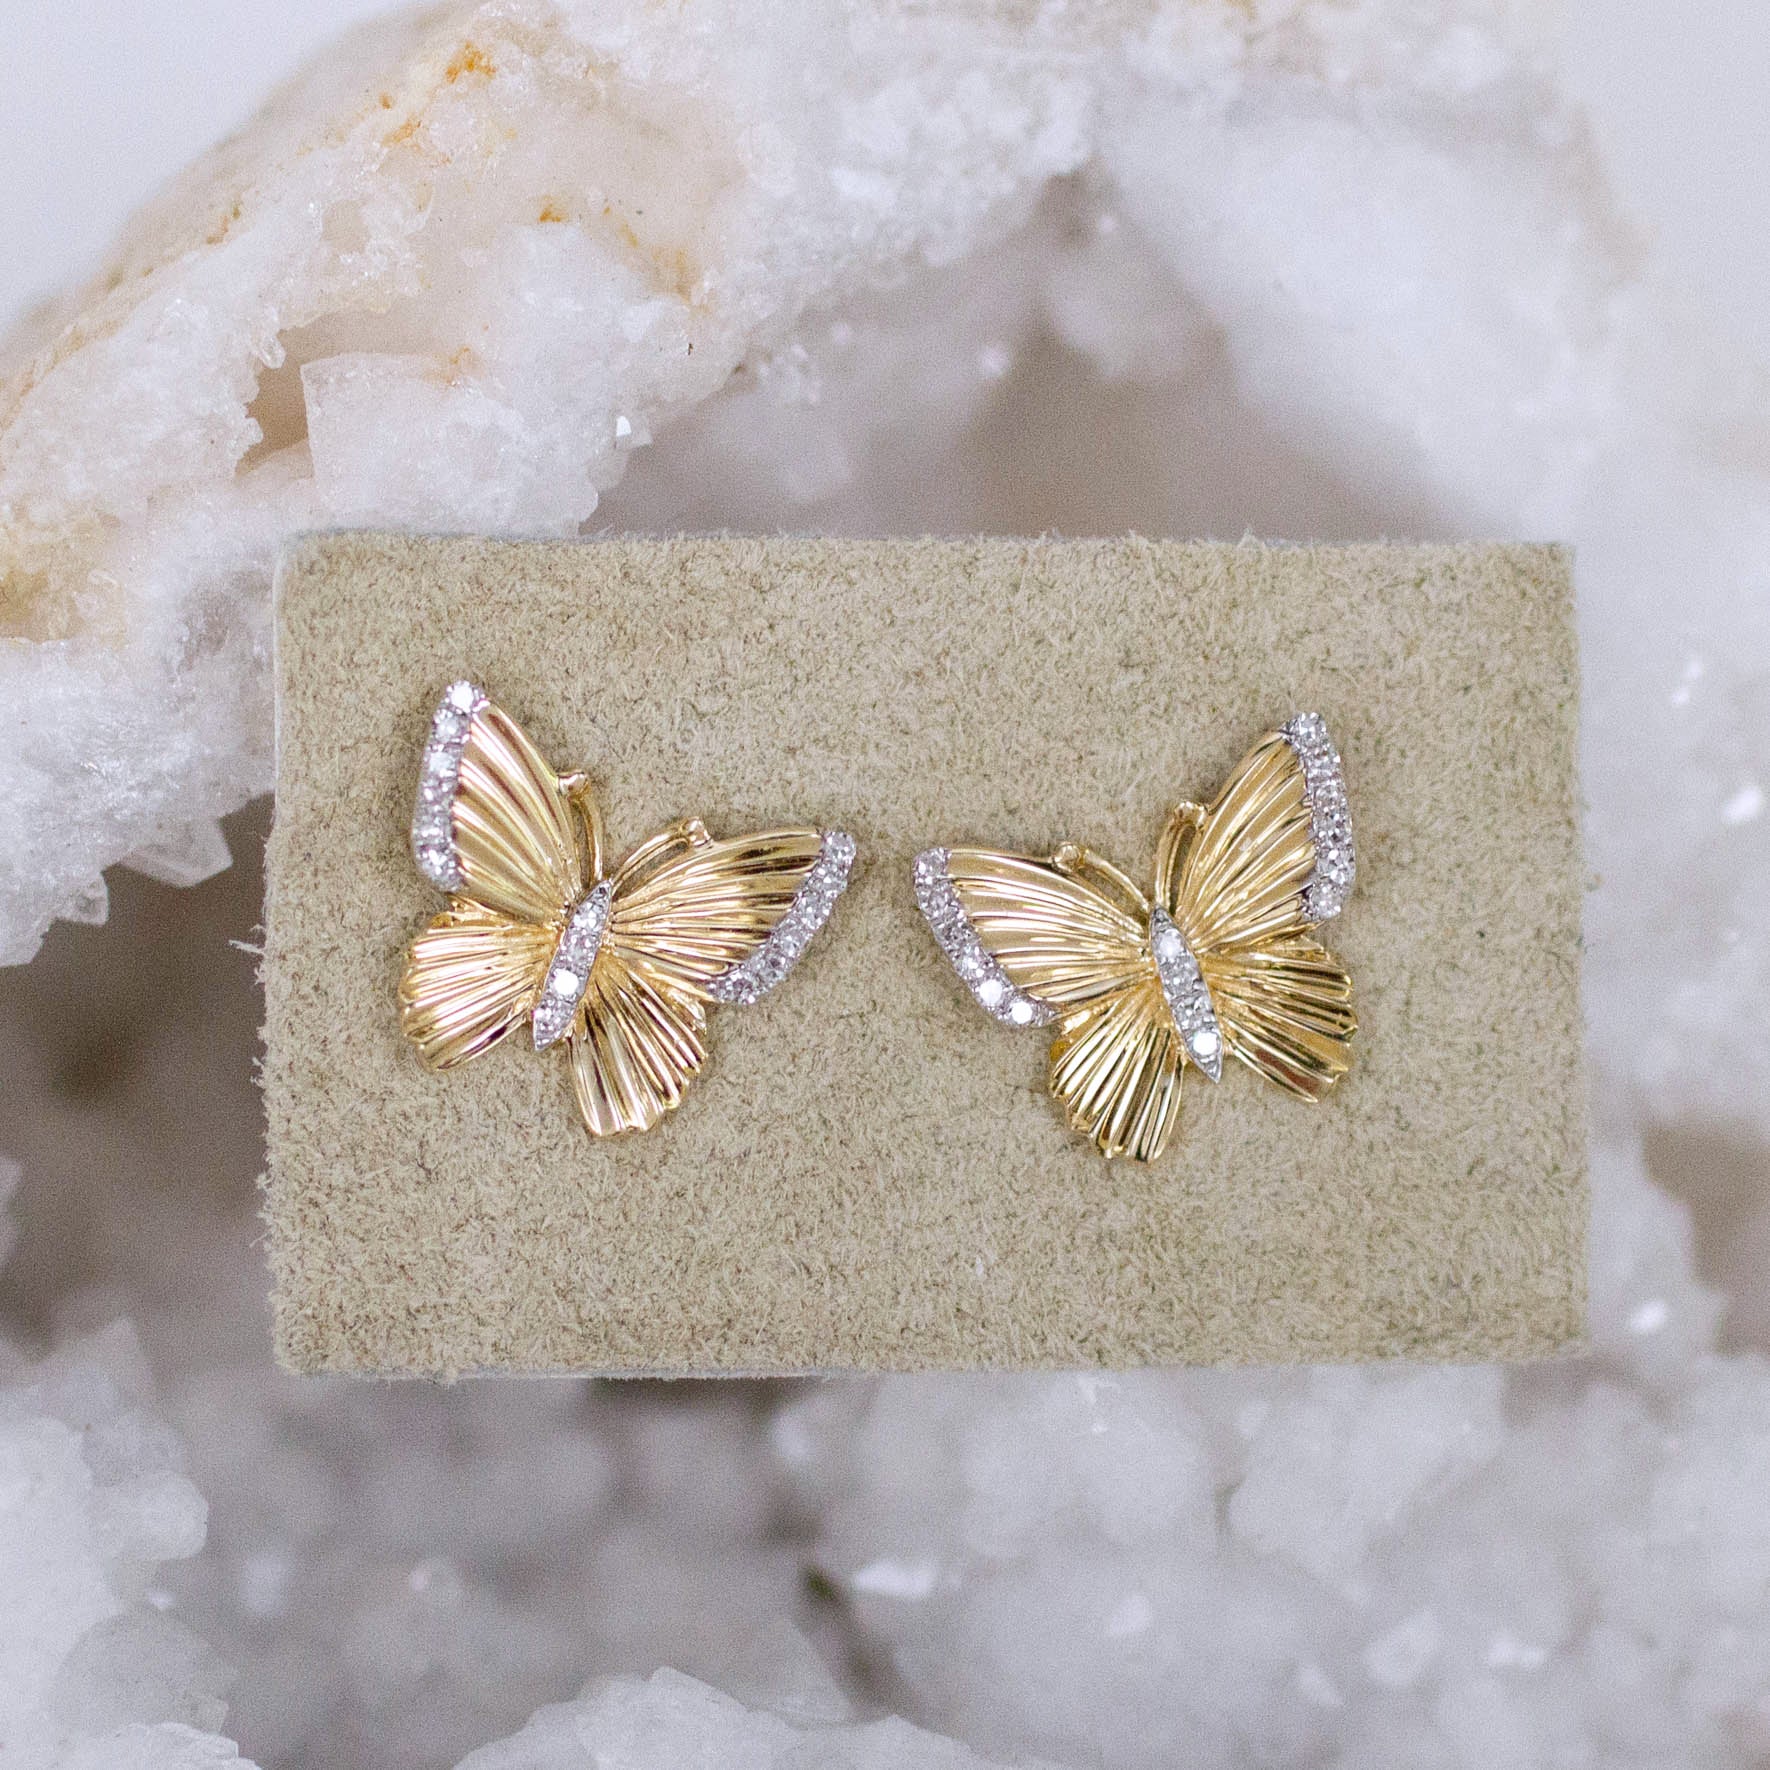 Buy Kercisbeauty Dainty Gold Butterfly Earrings for Women Ladies Girls  Butterfly Drop Dangle Hoop Earrings (Gold) at Amazon.in